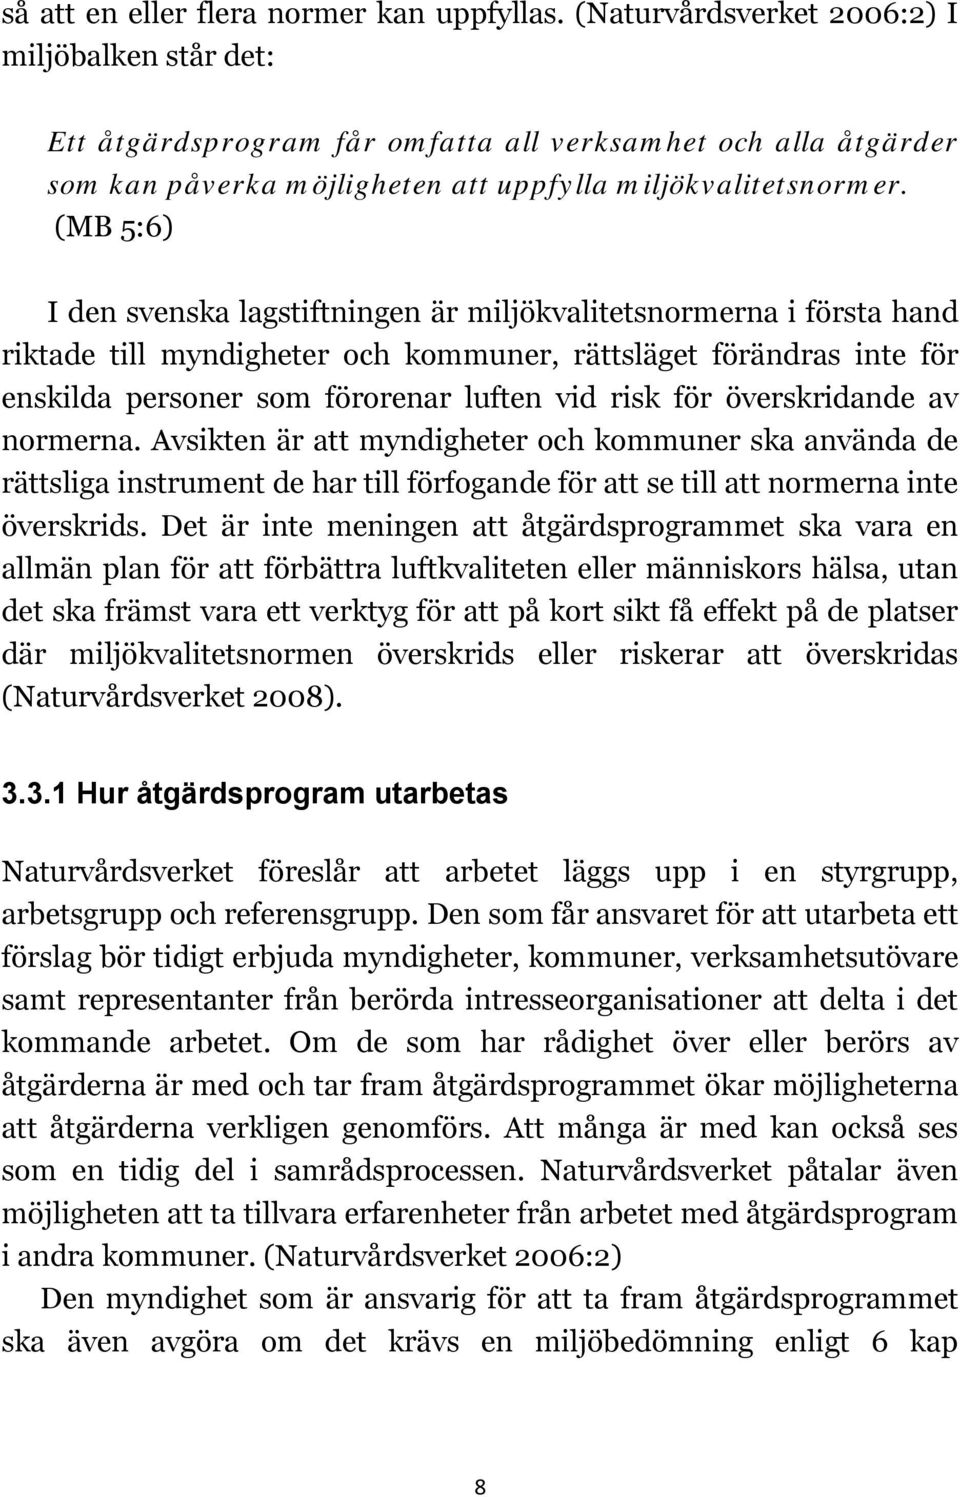 (MB 5:6) I den svenska lagstiftningen är miljökvalitetsnormerna i första hand riktade till myndigheter och kommuner, rättsläget förändras inte för enskilda personer som förorenar luften vid risk för